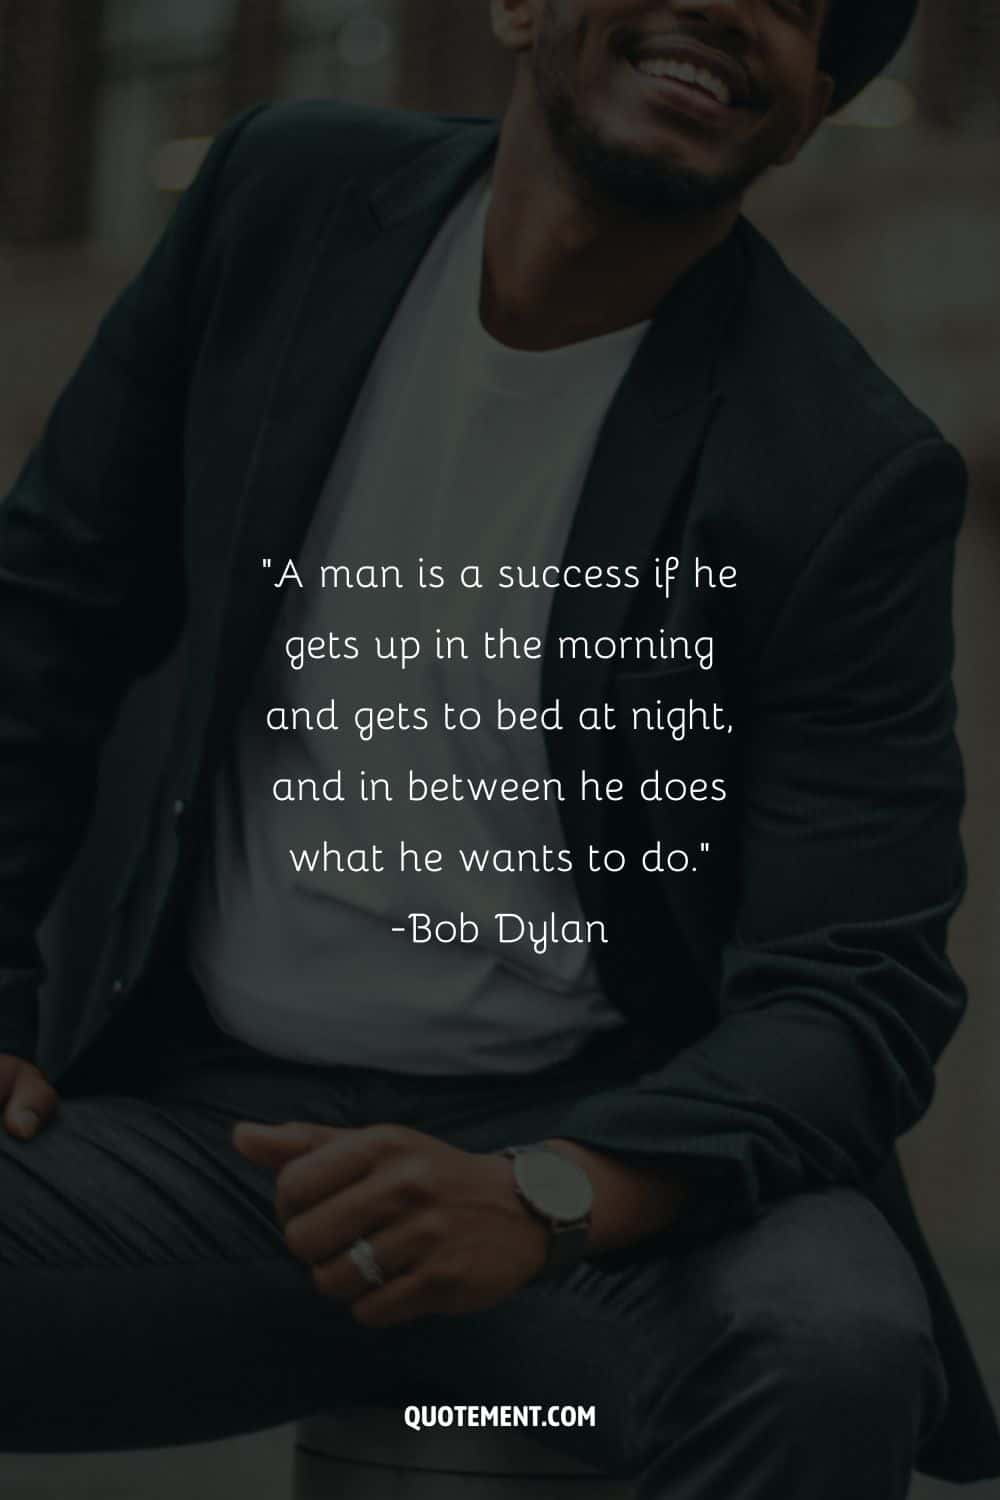 Un hombre tiene éxito si se levanta por la mañana y se acuesta por la noche, y entre medias hace lo que quiere hacer